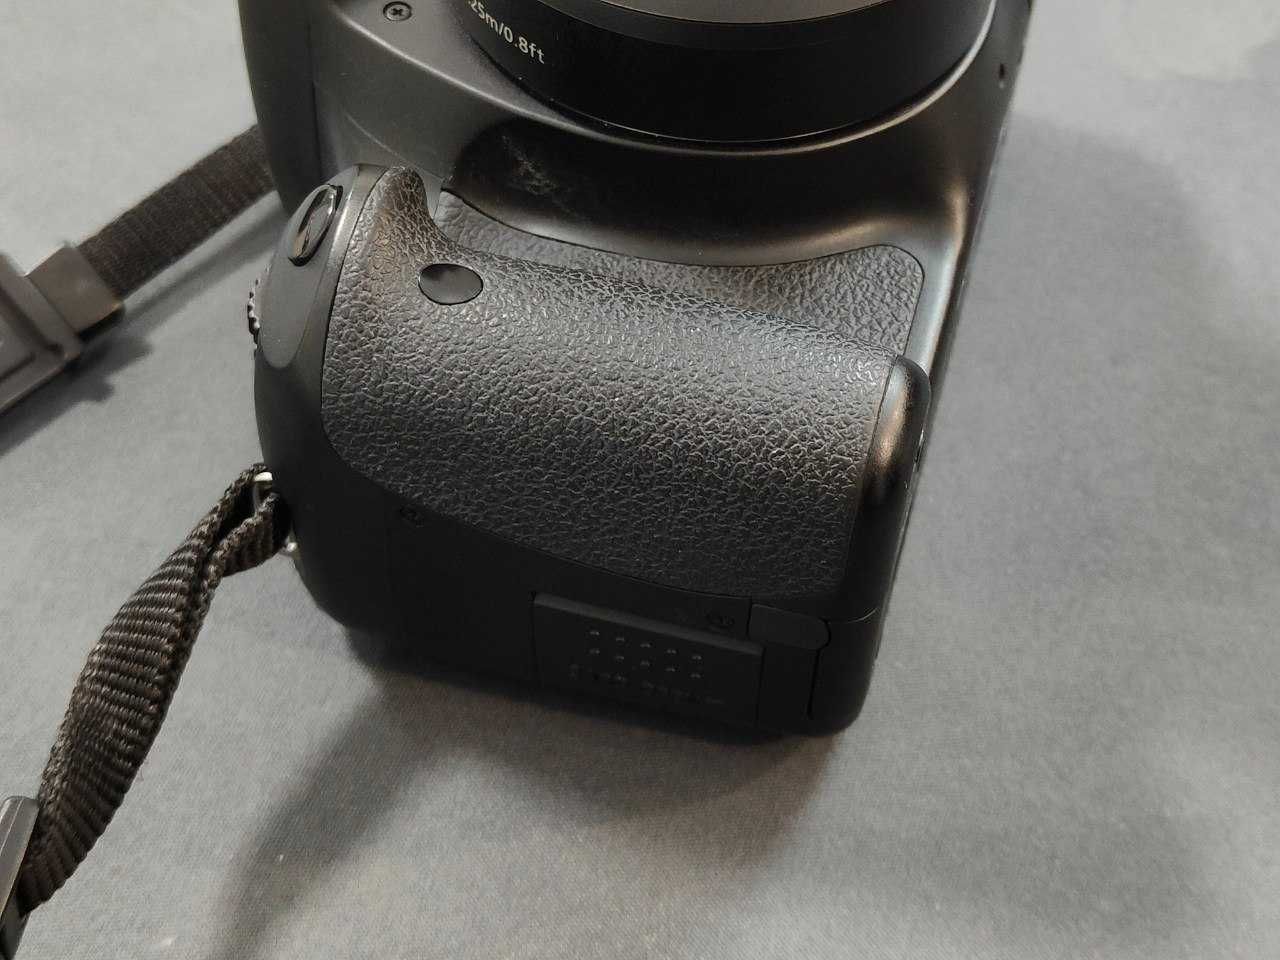 Canon 550d (Rebel T2i) идеальное состояние. Маленький пробег